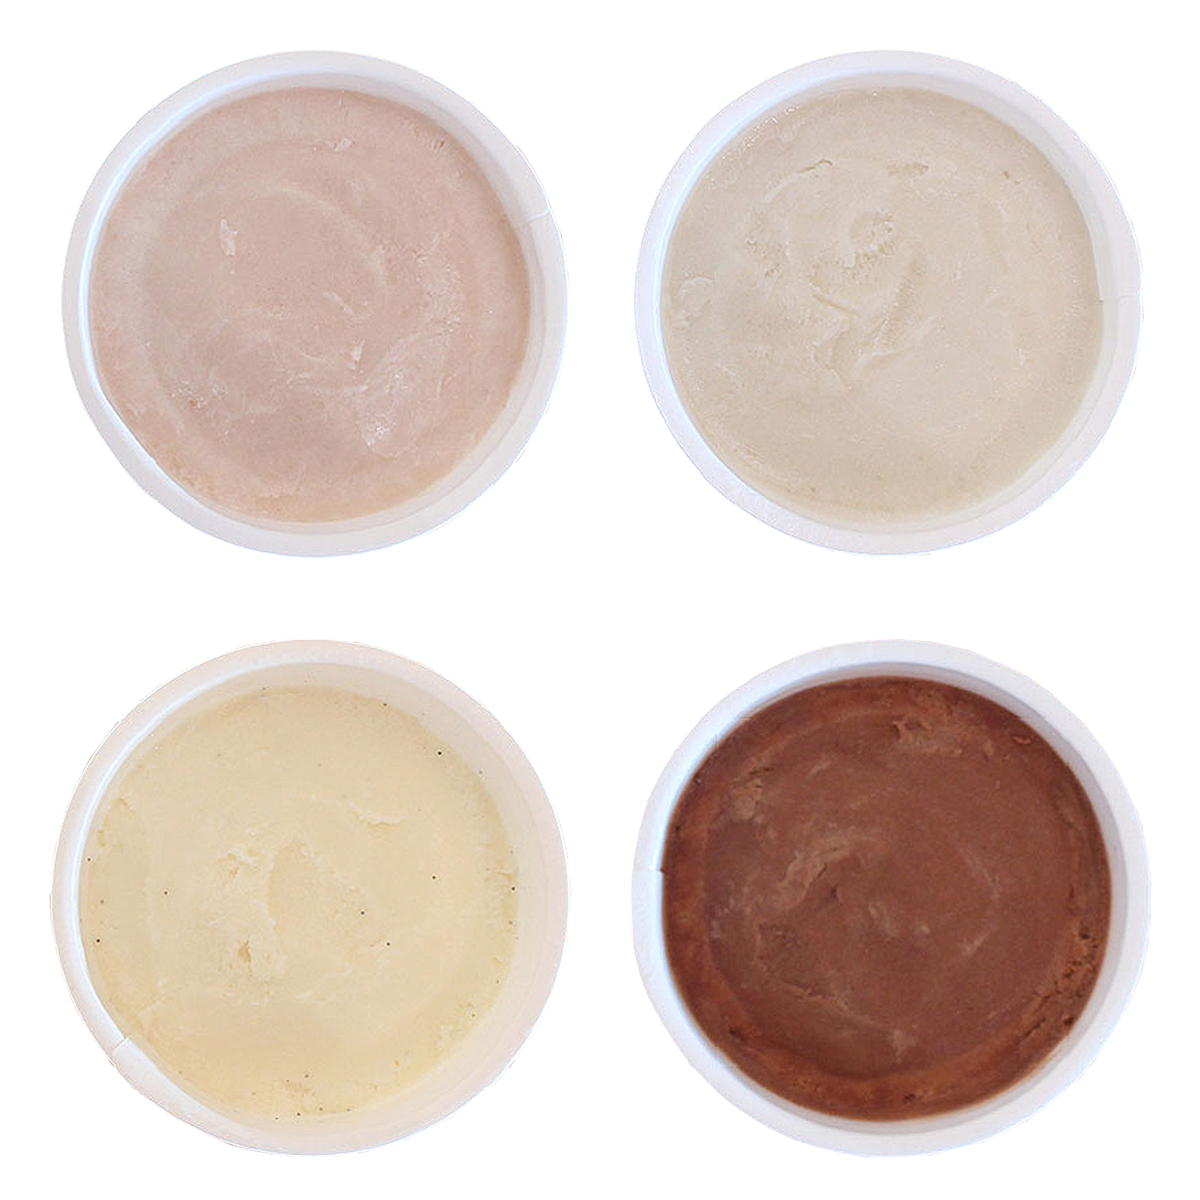 有機 JAS オーガニック 無添加 ジェラート アイス 詰め合わせ セット 乳製品・卵不使用 (4個-6個) ホライズンファームズ